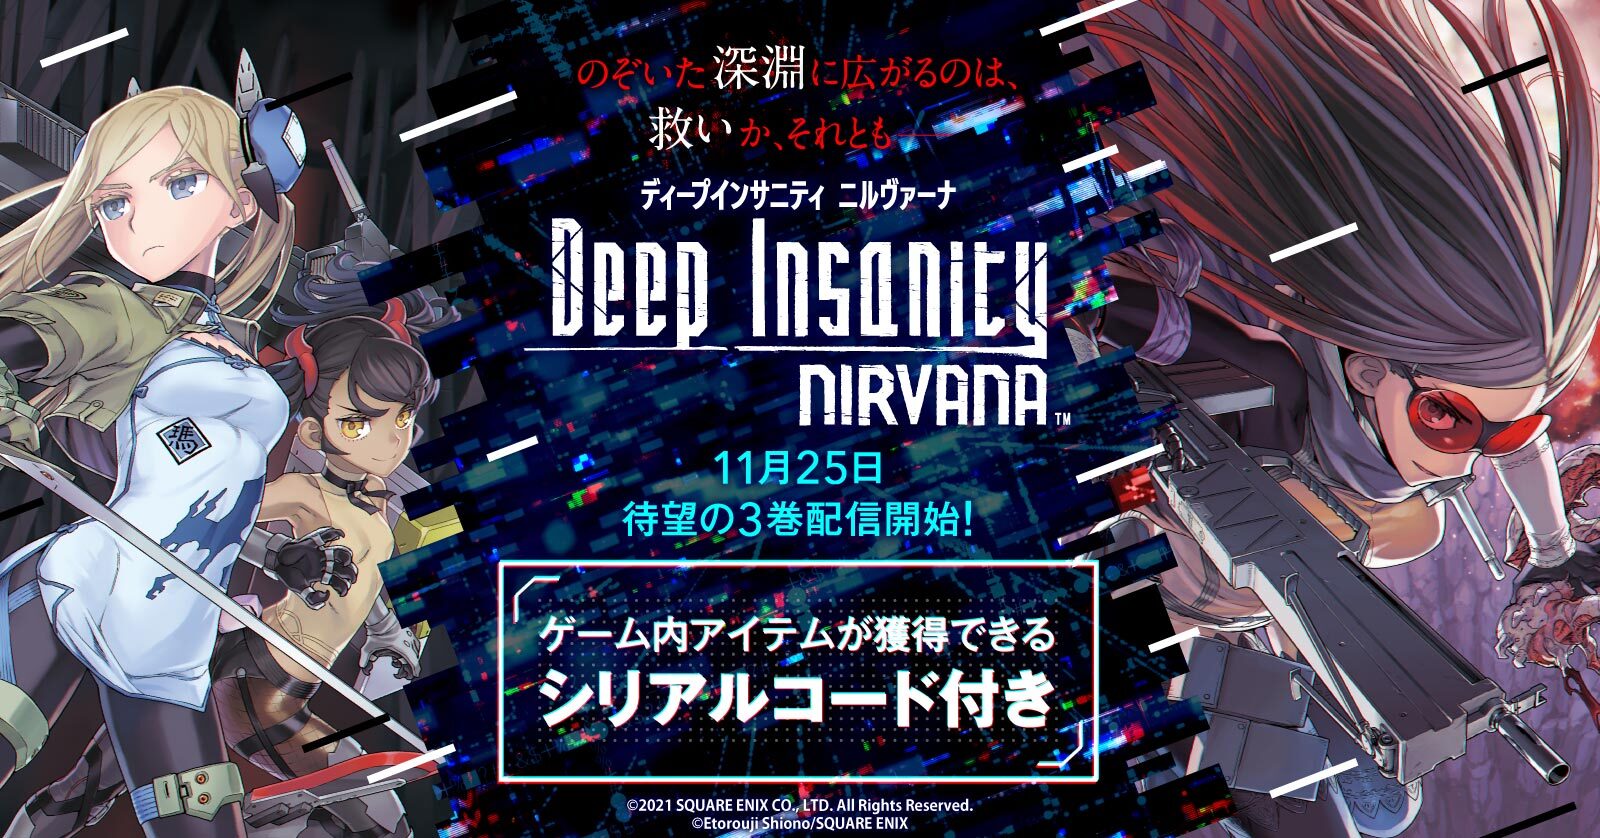 ついに配信開始!!「Deep Insanity Nirvana」特典付き特設ページ